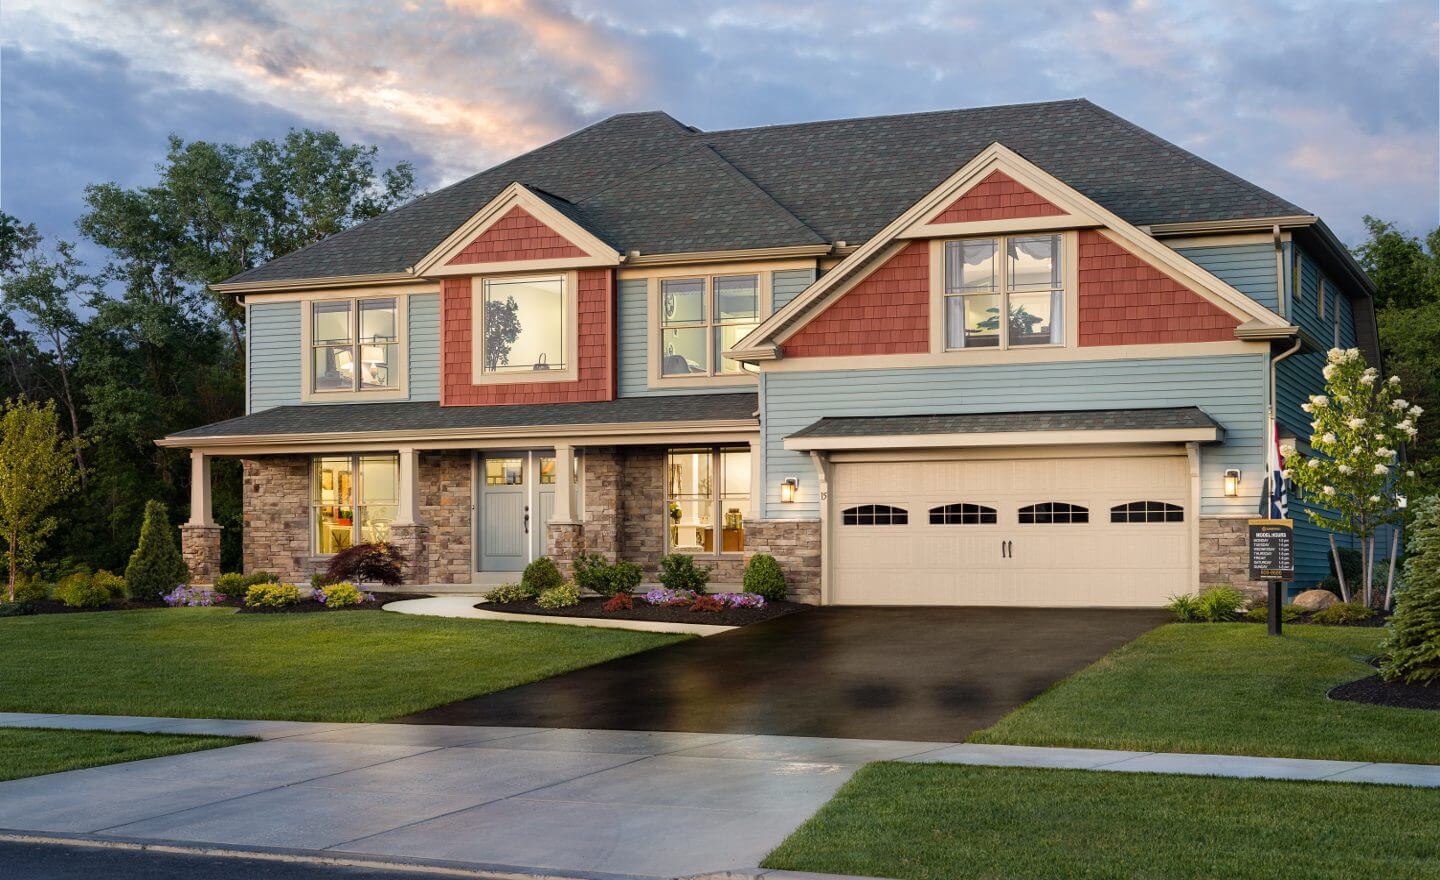 Marrono #1 for New Single Family Homes for Sale in Buffalo, NY & WNY  Advantage II